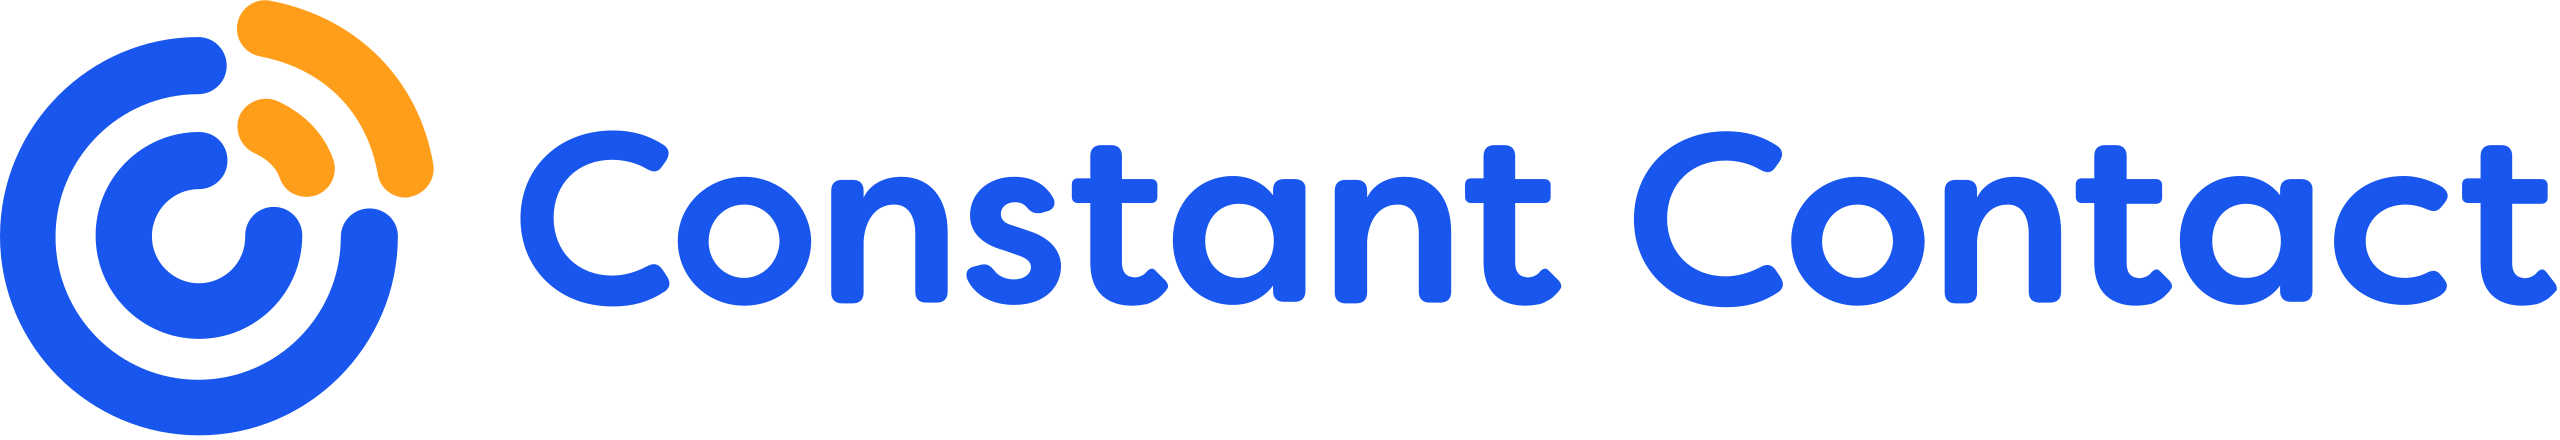 Constant Contact logo